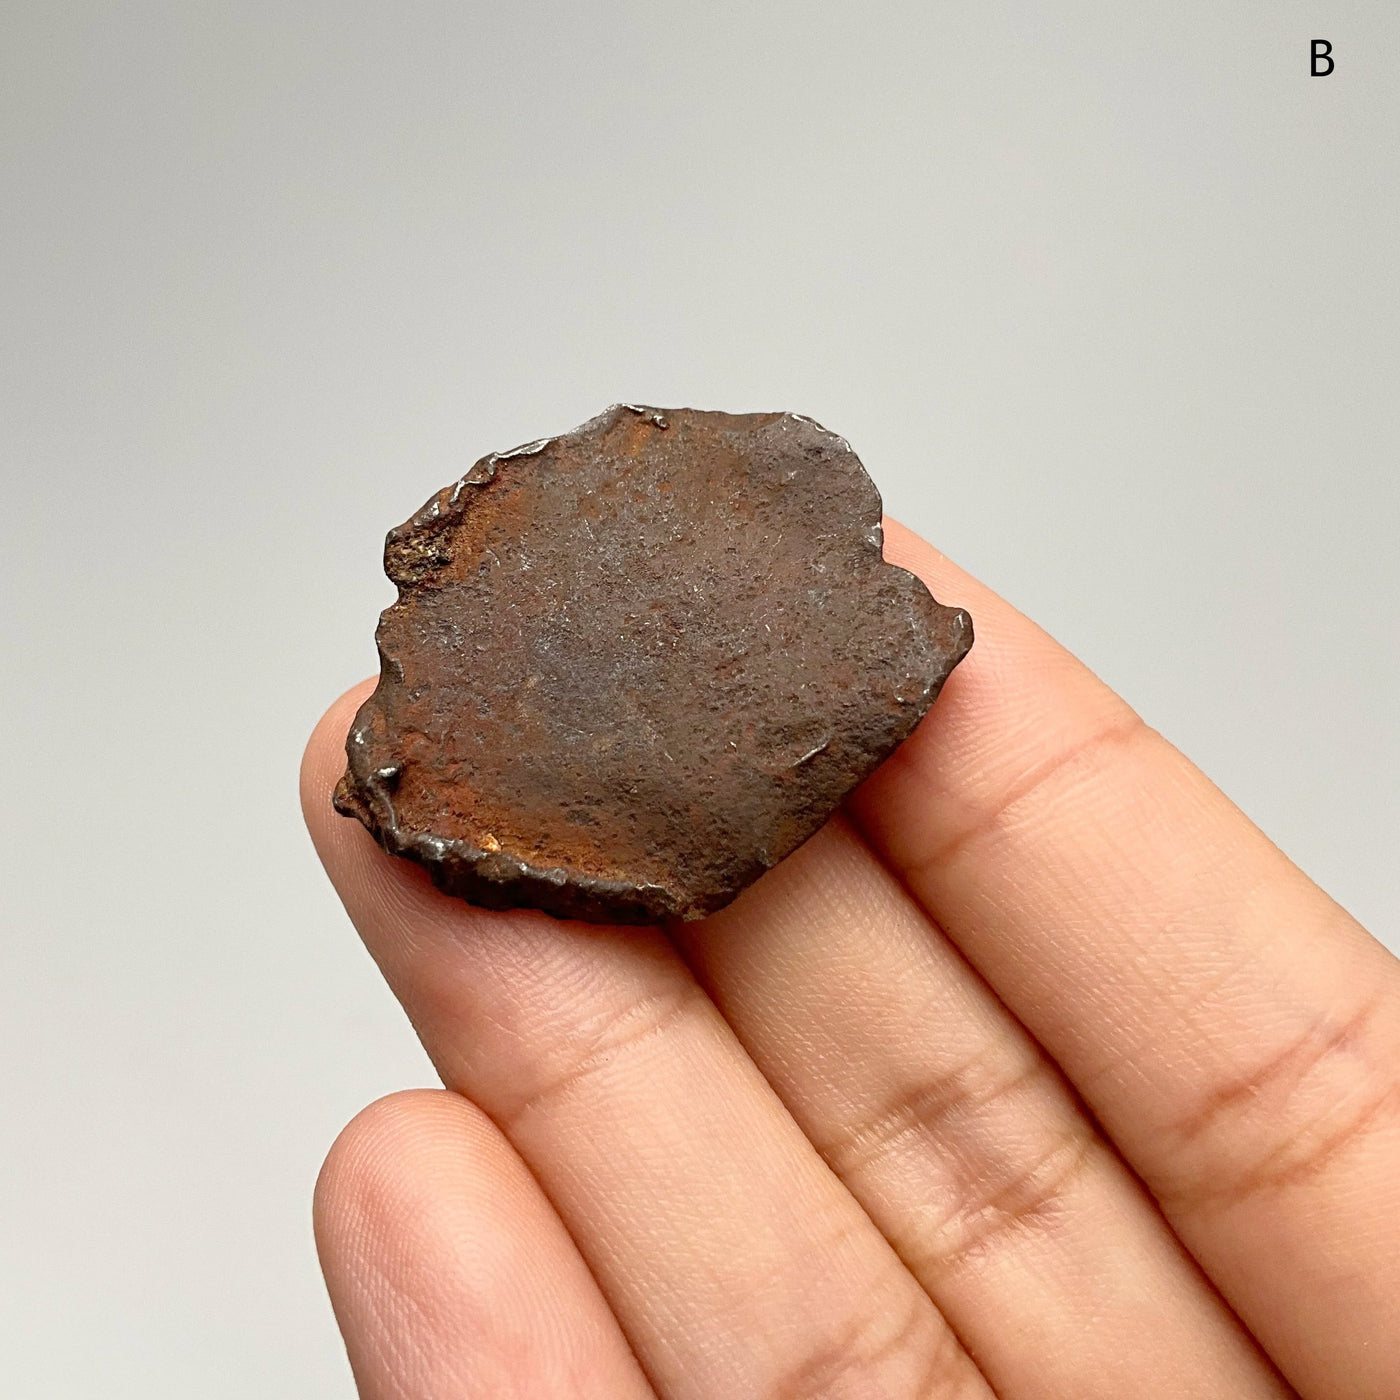 Gebel Kamil Meteorite